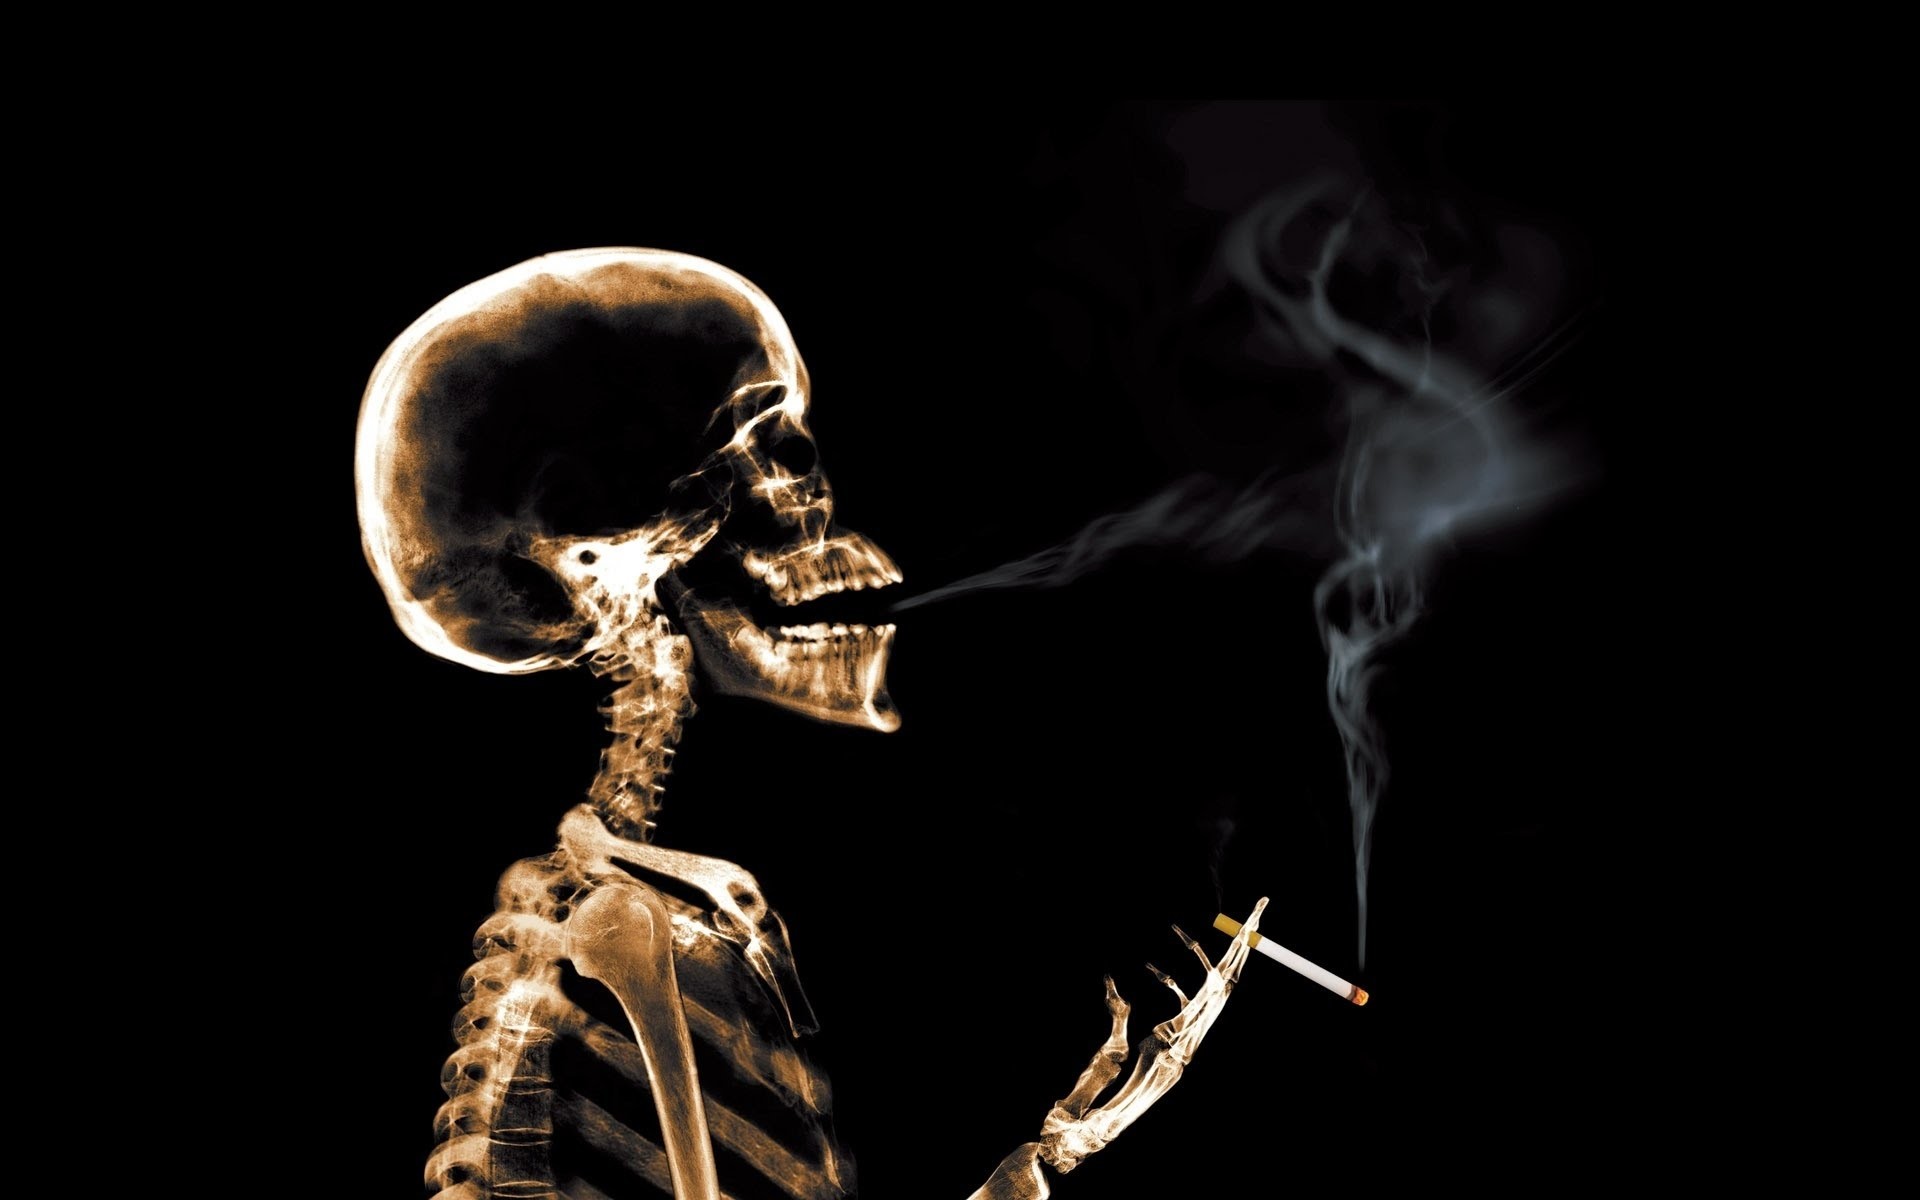 fumer fond d'écran télécharger,squelette,humain,fumée,corps humain,la photographie